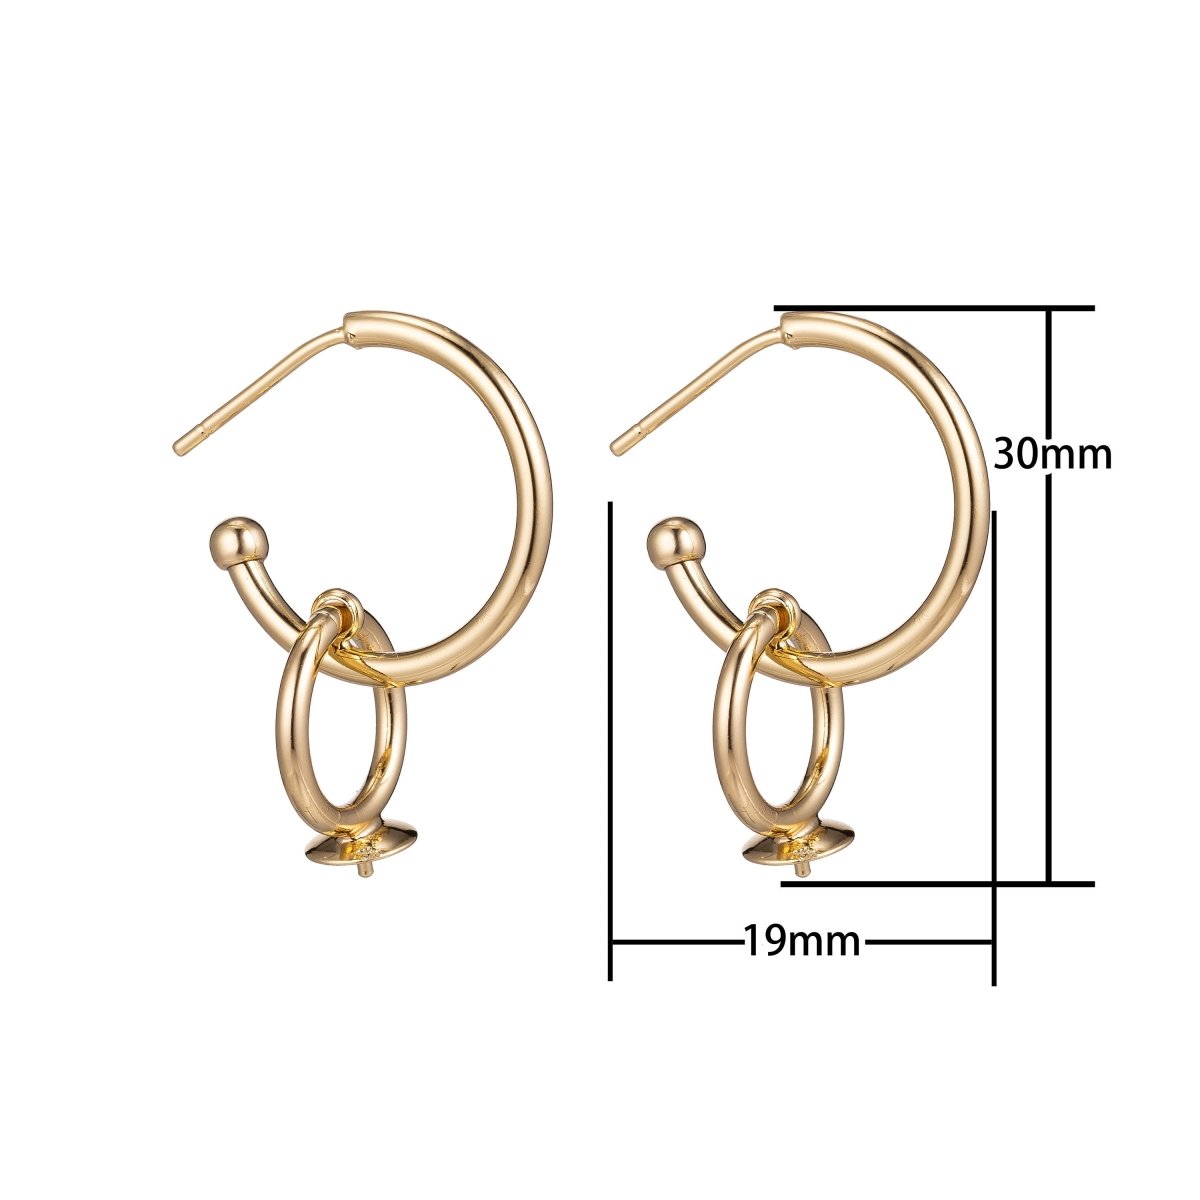 18k Gold Filled DIY Huggie Earrings with Loop, Stud Earrings, Crafted Hoop Earring Making Findings for Jewelry Making Supplies K-015 - DLUXCA